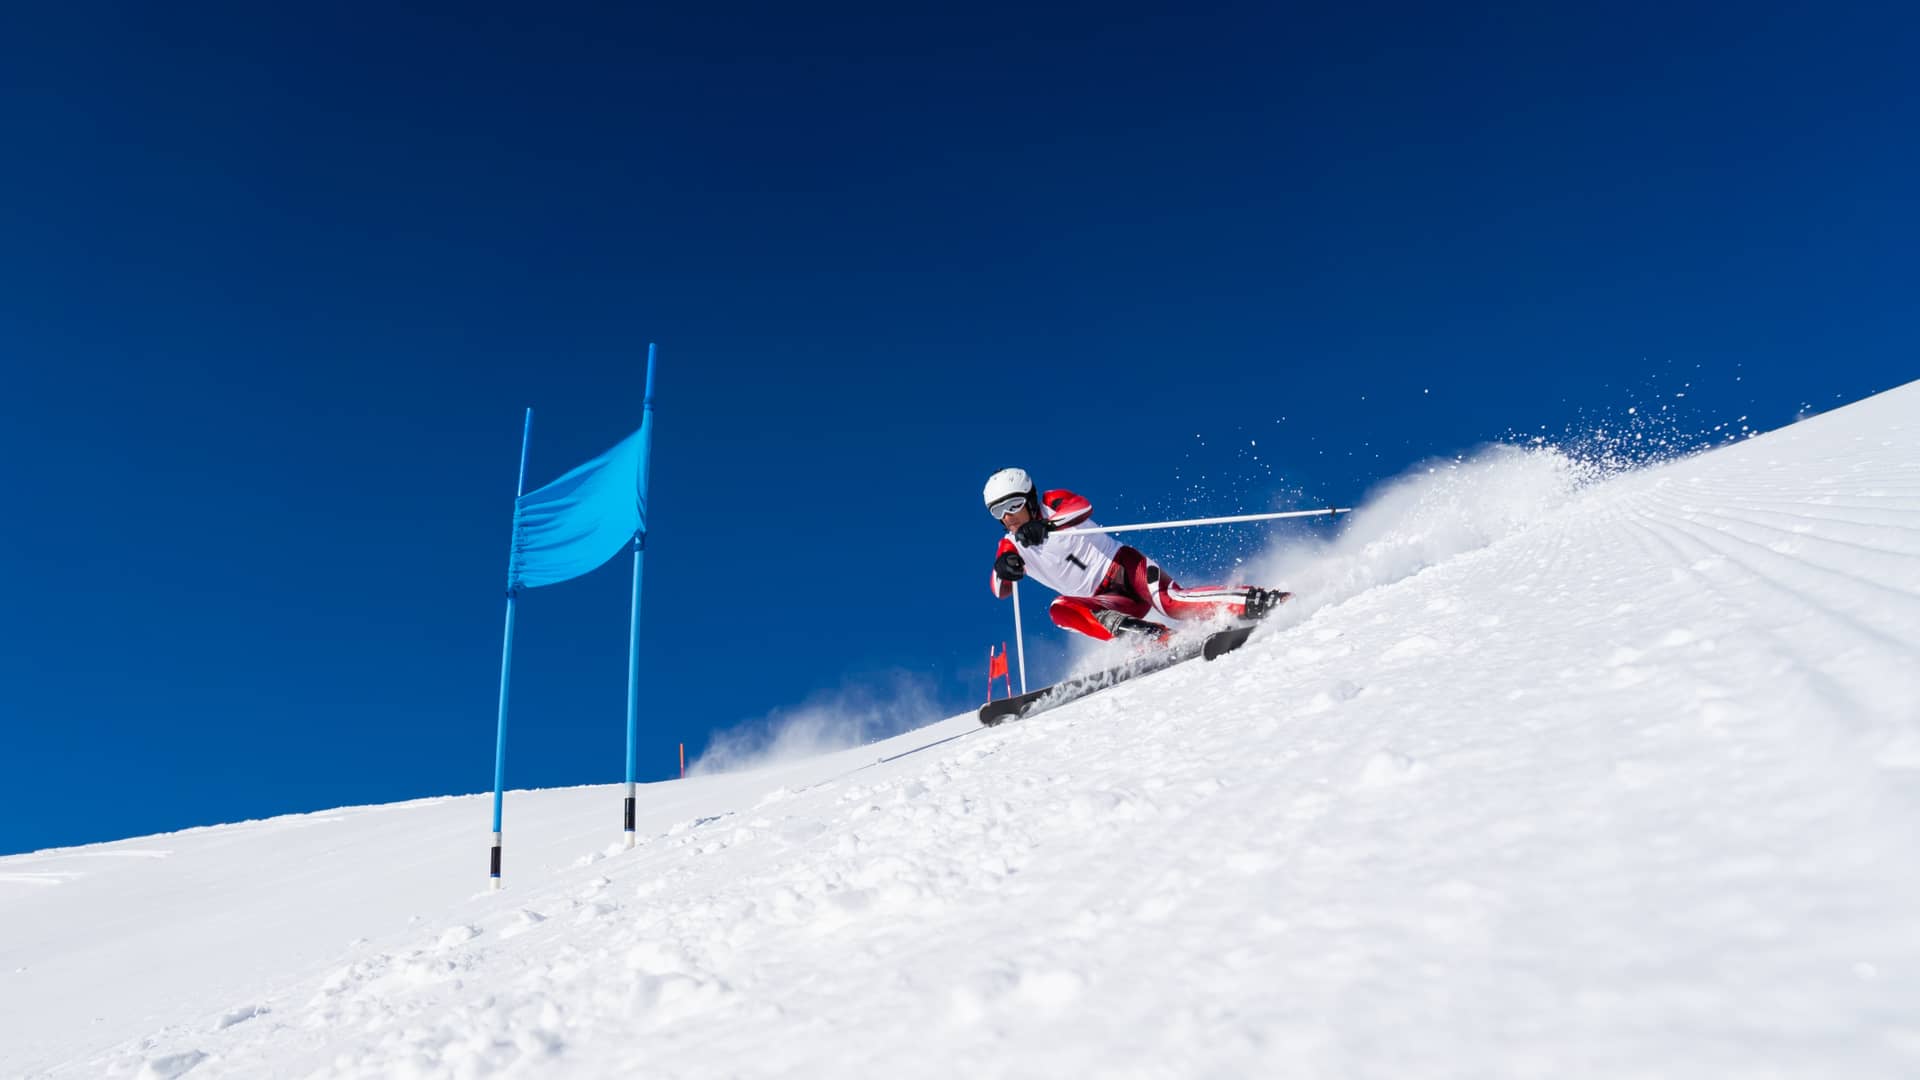 Seguro esquí fuera pistas: asistencia, coberturas y precios